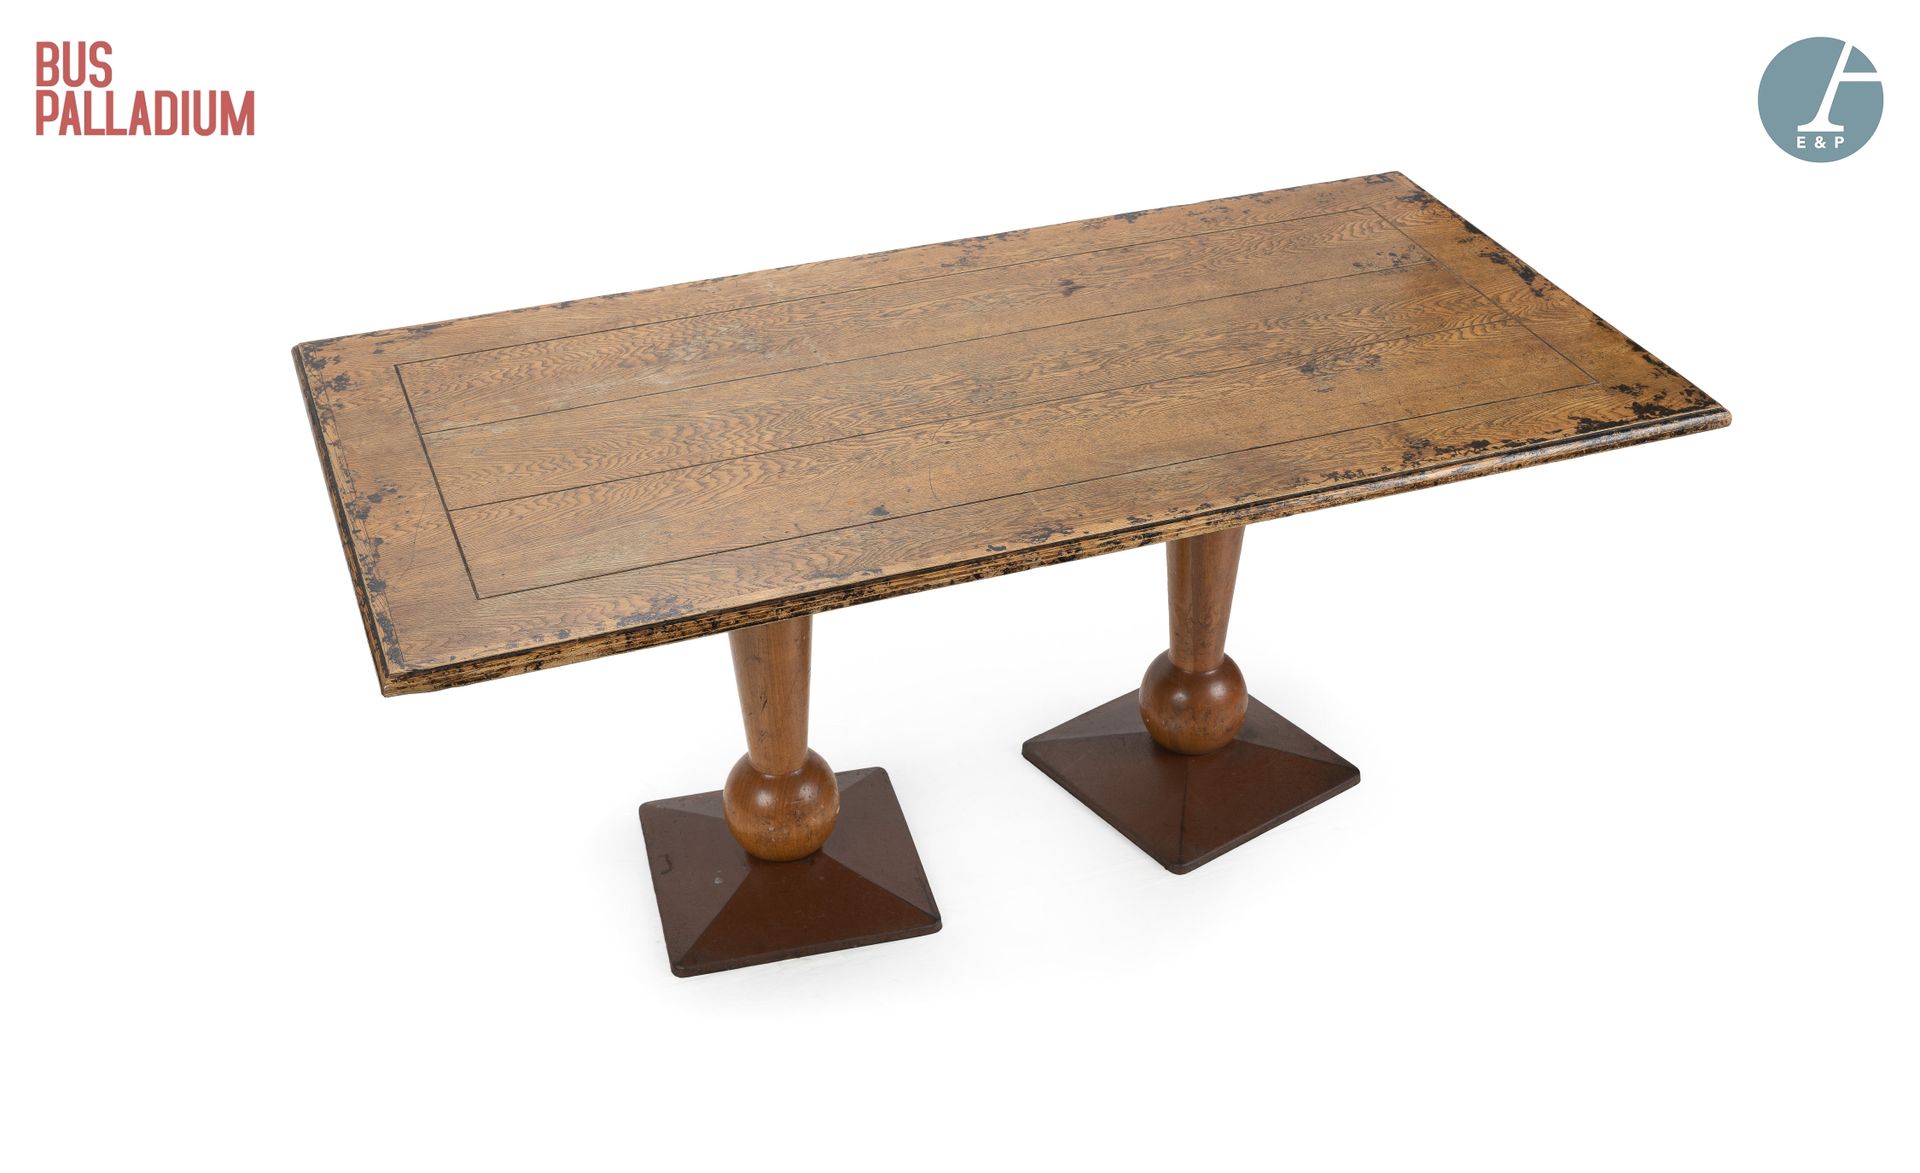 Null Aus dem Bus Palladium



Tisch aus geschnitztem Naturholz, die rechteckige &hellip;